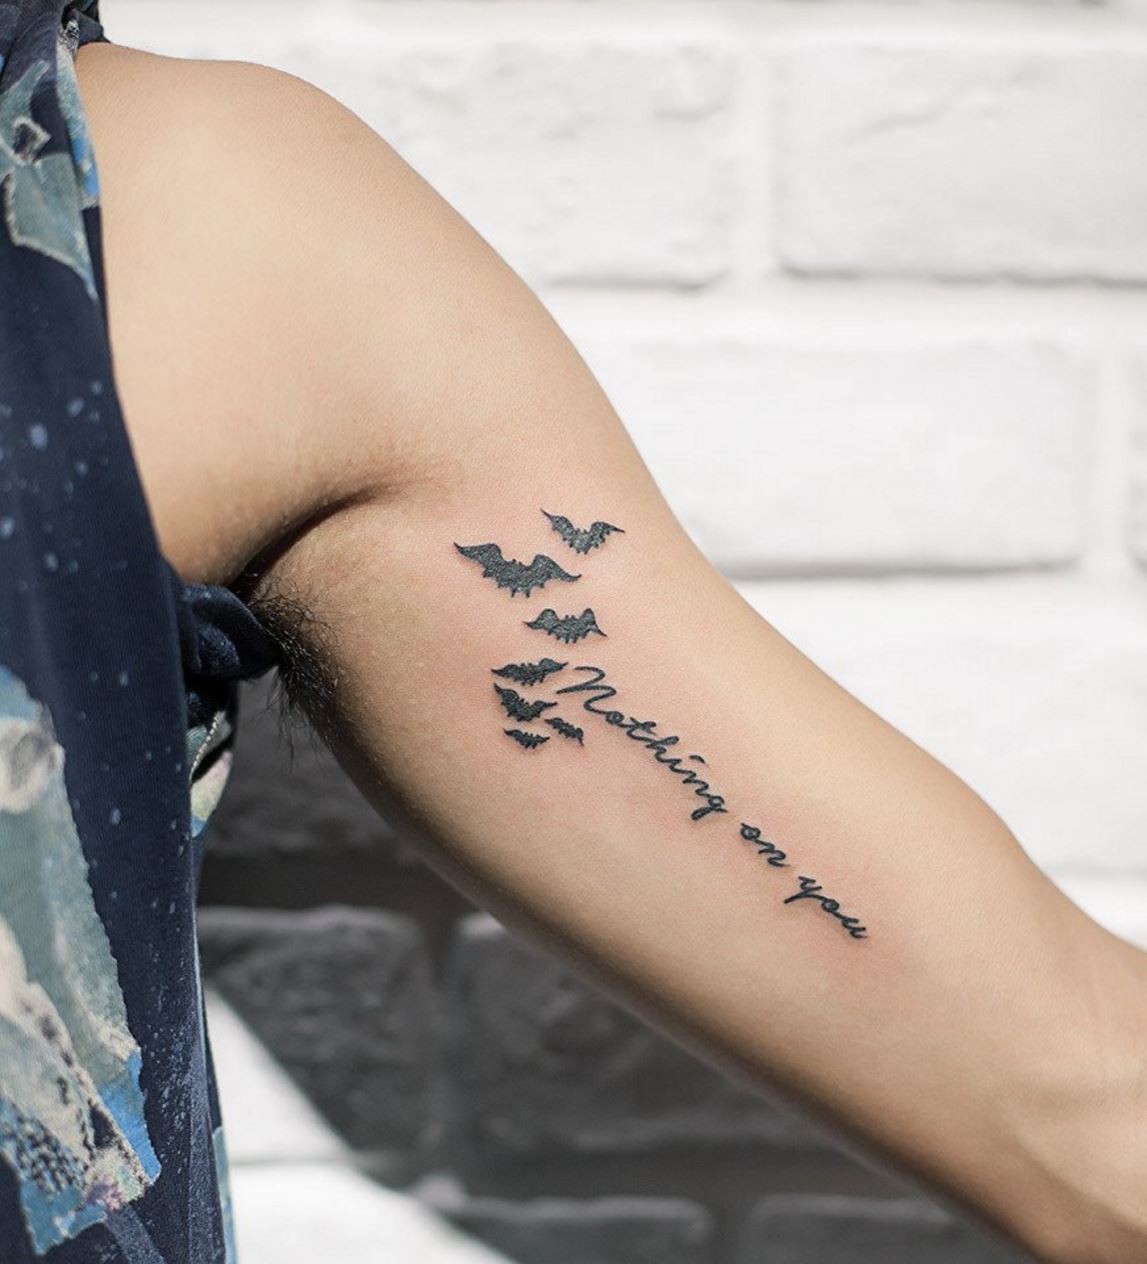 Hình xăm chữ ở tay nam Hình xăm chữ hình xăm được thực hiện tại Orion tattoo   32 Đào Duy Từ Hoàn Kiếm HN oriontattoovn 268 Ph ố hu  Tattoo  quotes Tattoos